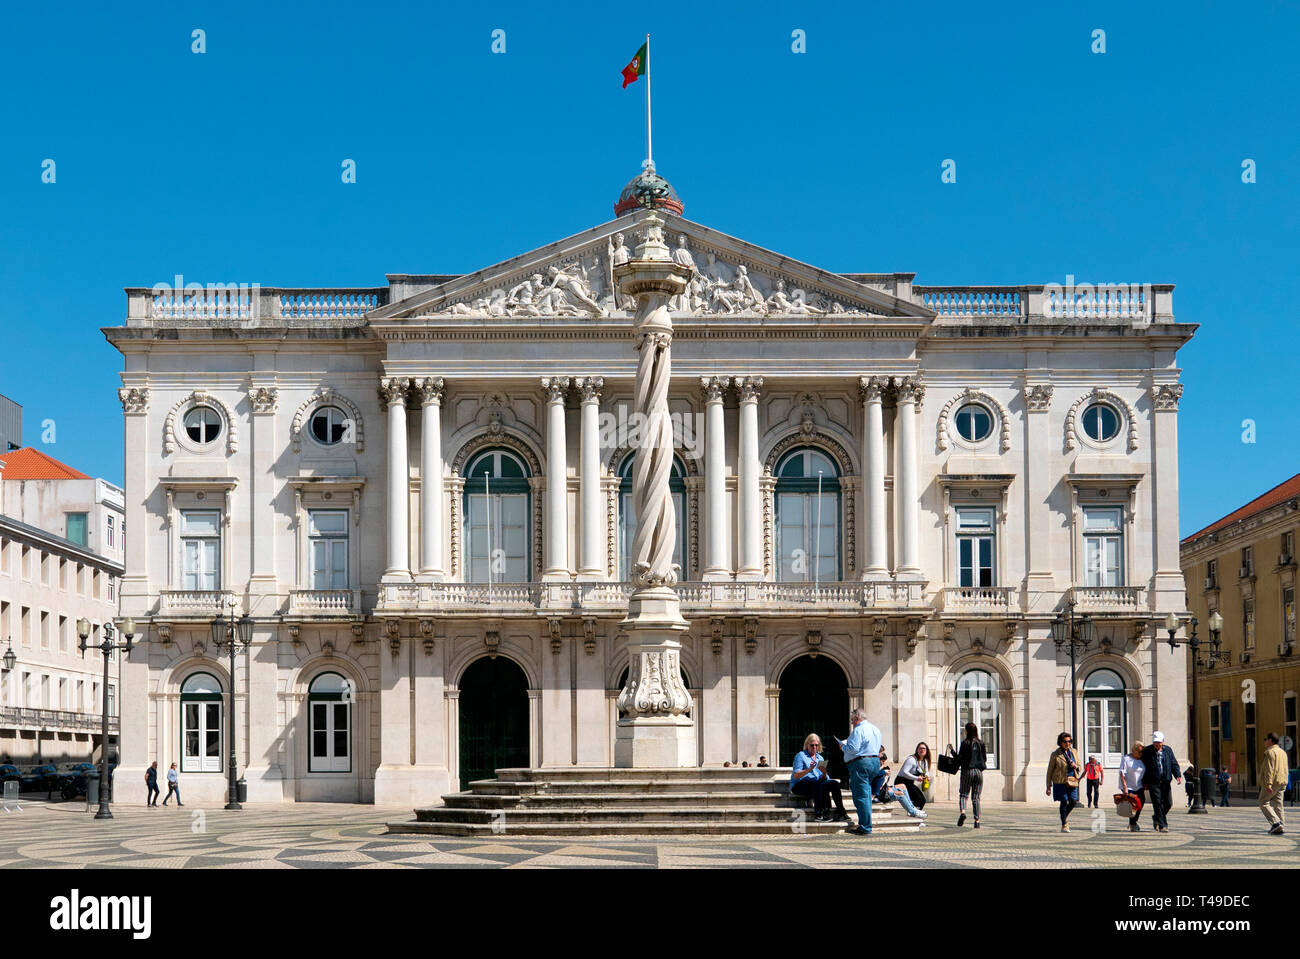 Hôtel de ville de Lisbonne (Câmara Municipal de Lisboa), Praça do Município, Lisbonne, Portugal, Europe Banque D'Images